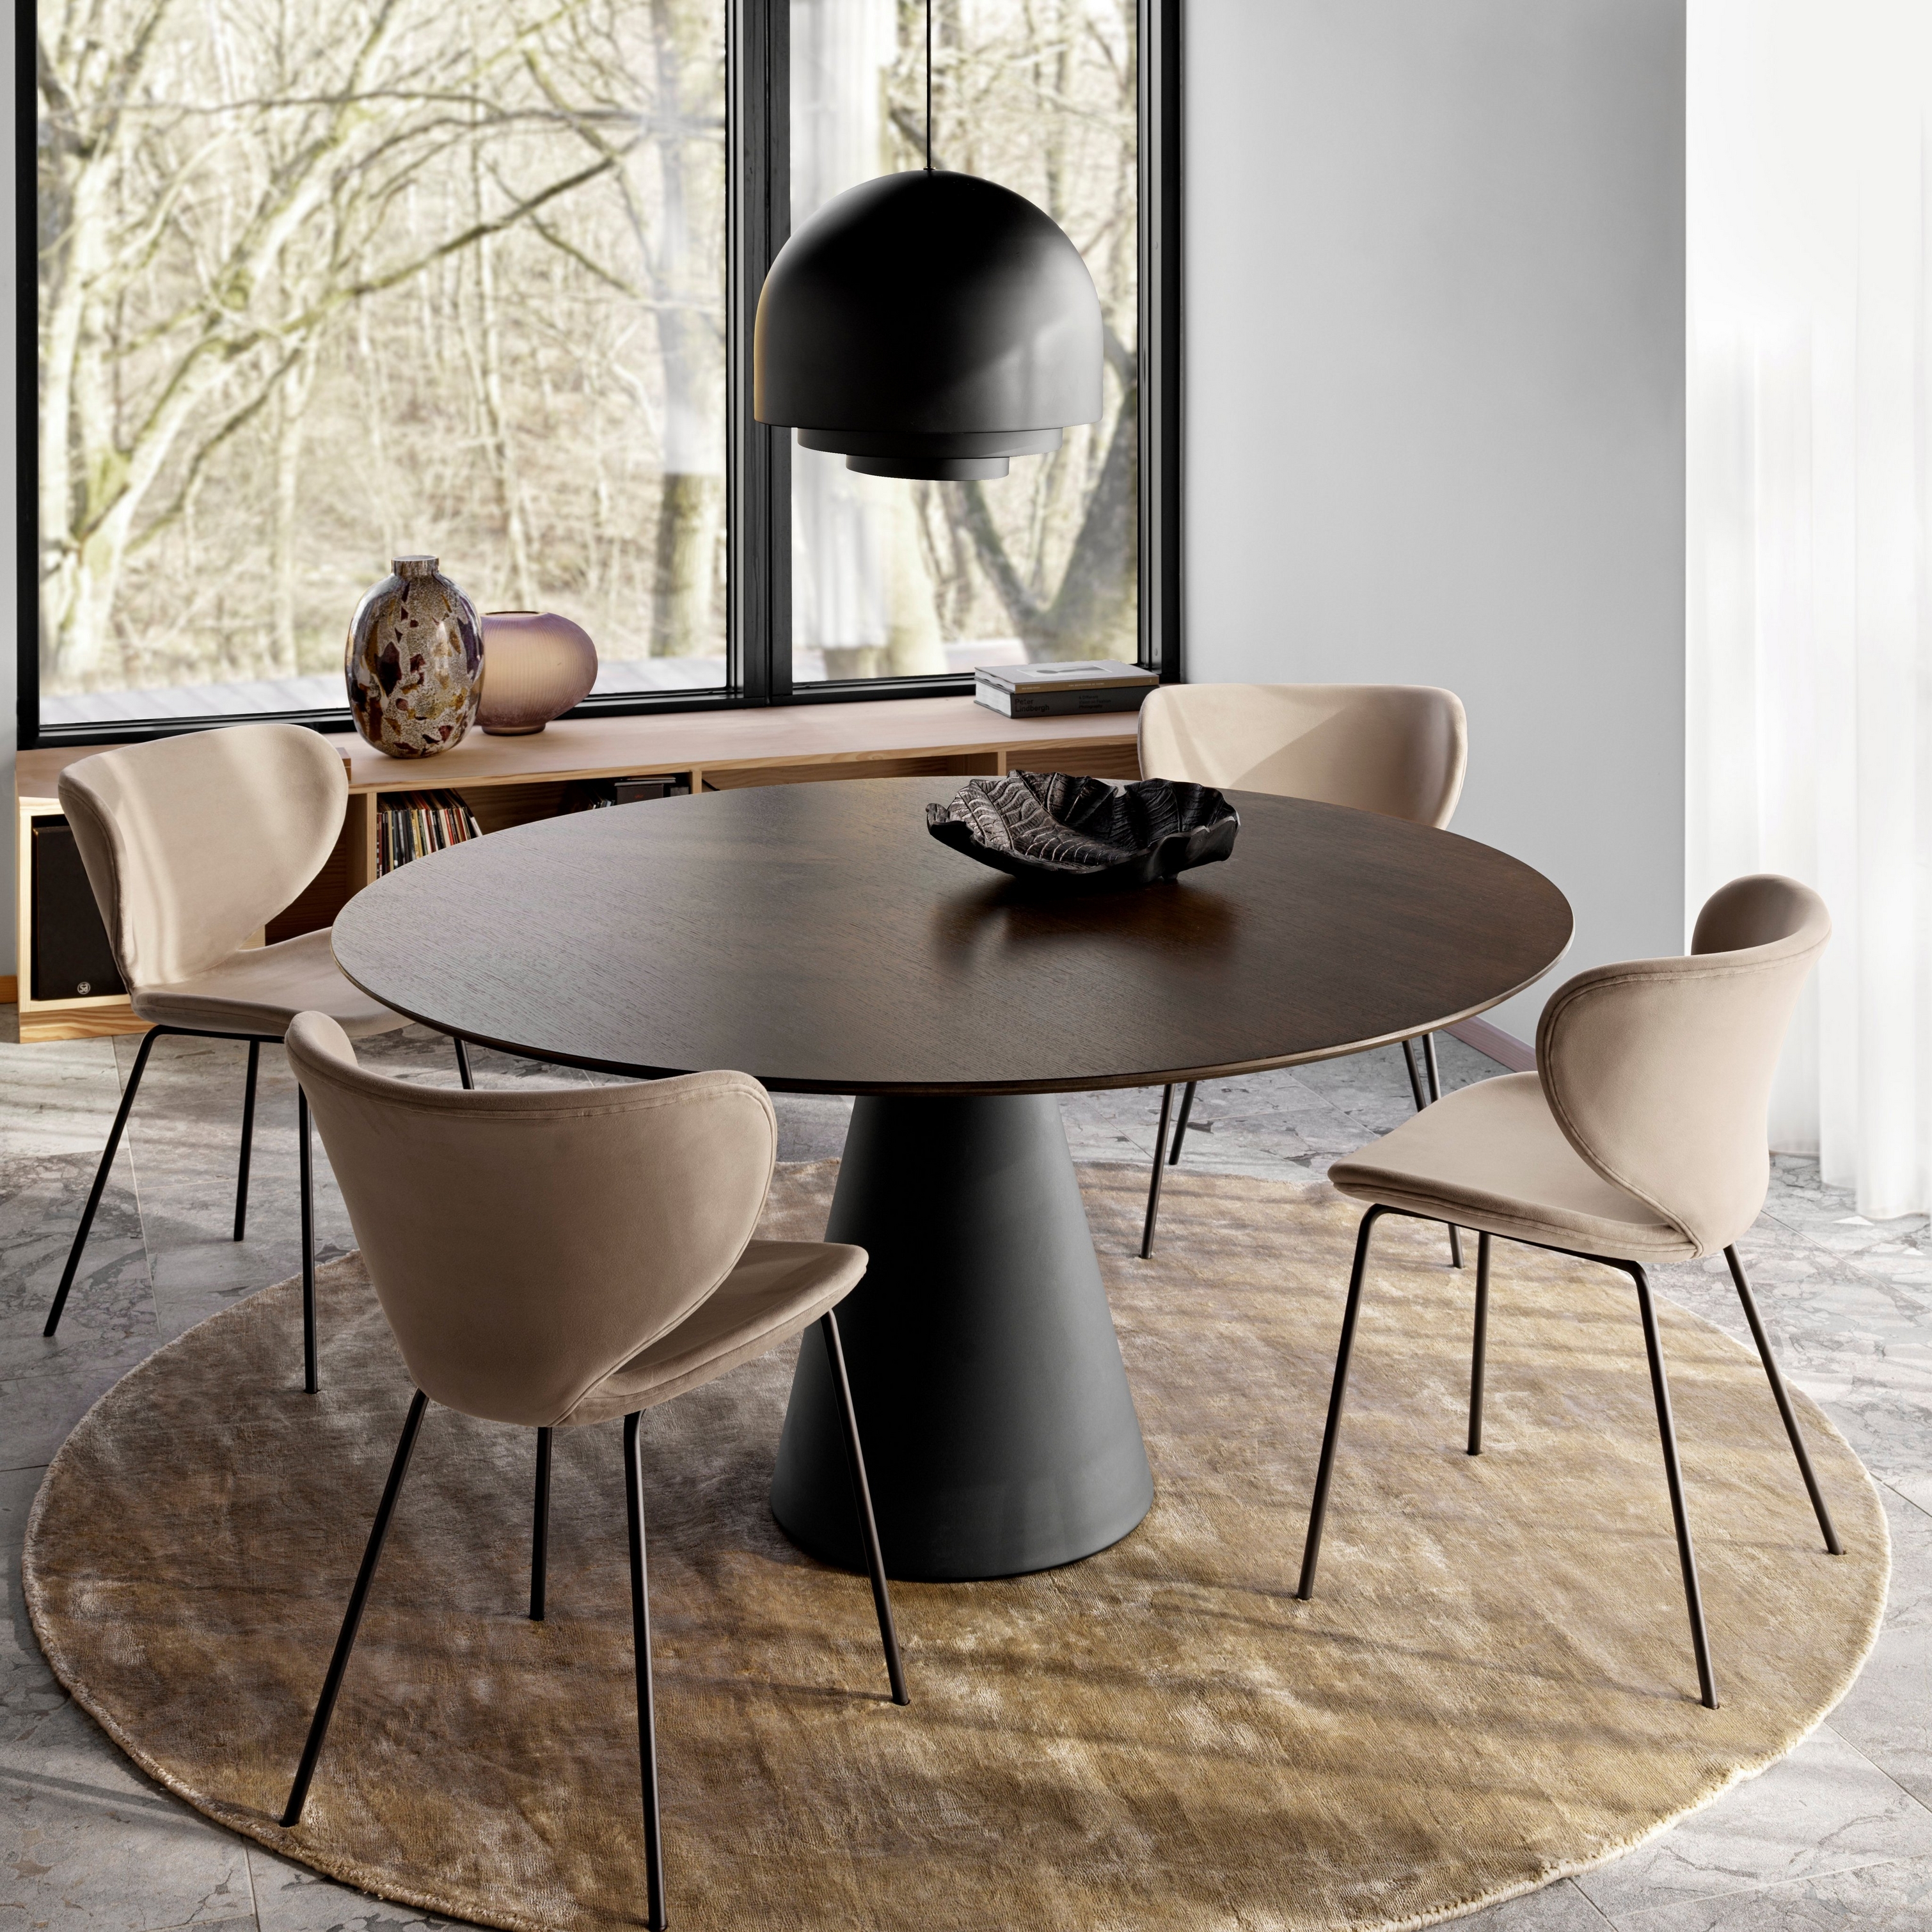 Okrągły stół do jadalni z brązowymi krzesłami ustawionymi na okrągłym dywanie w pobliżu okien sięgających od podłogi do sufitu, z zawieszoną nad stołem dużą lampą.